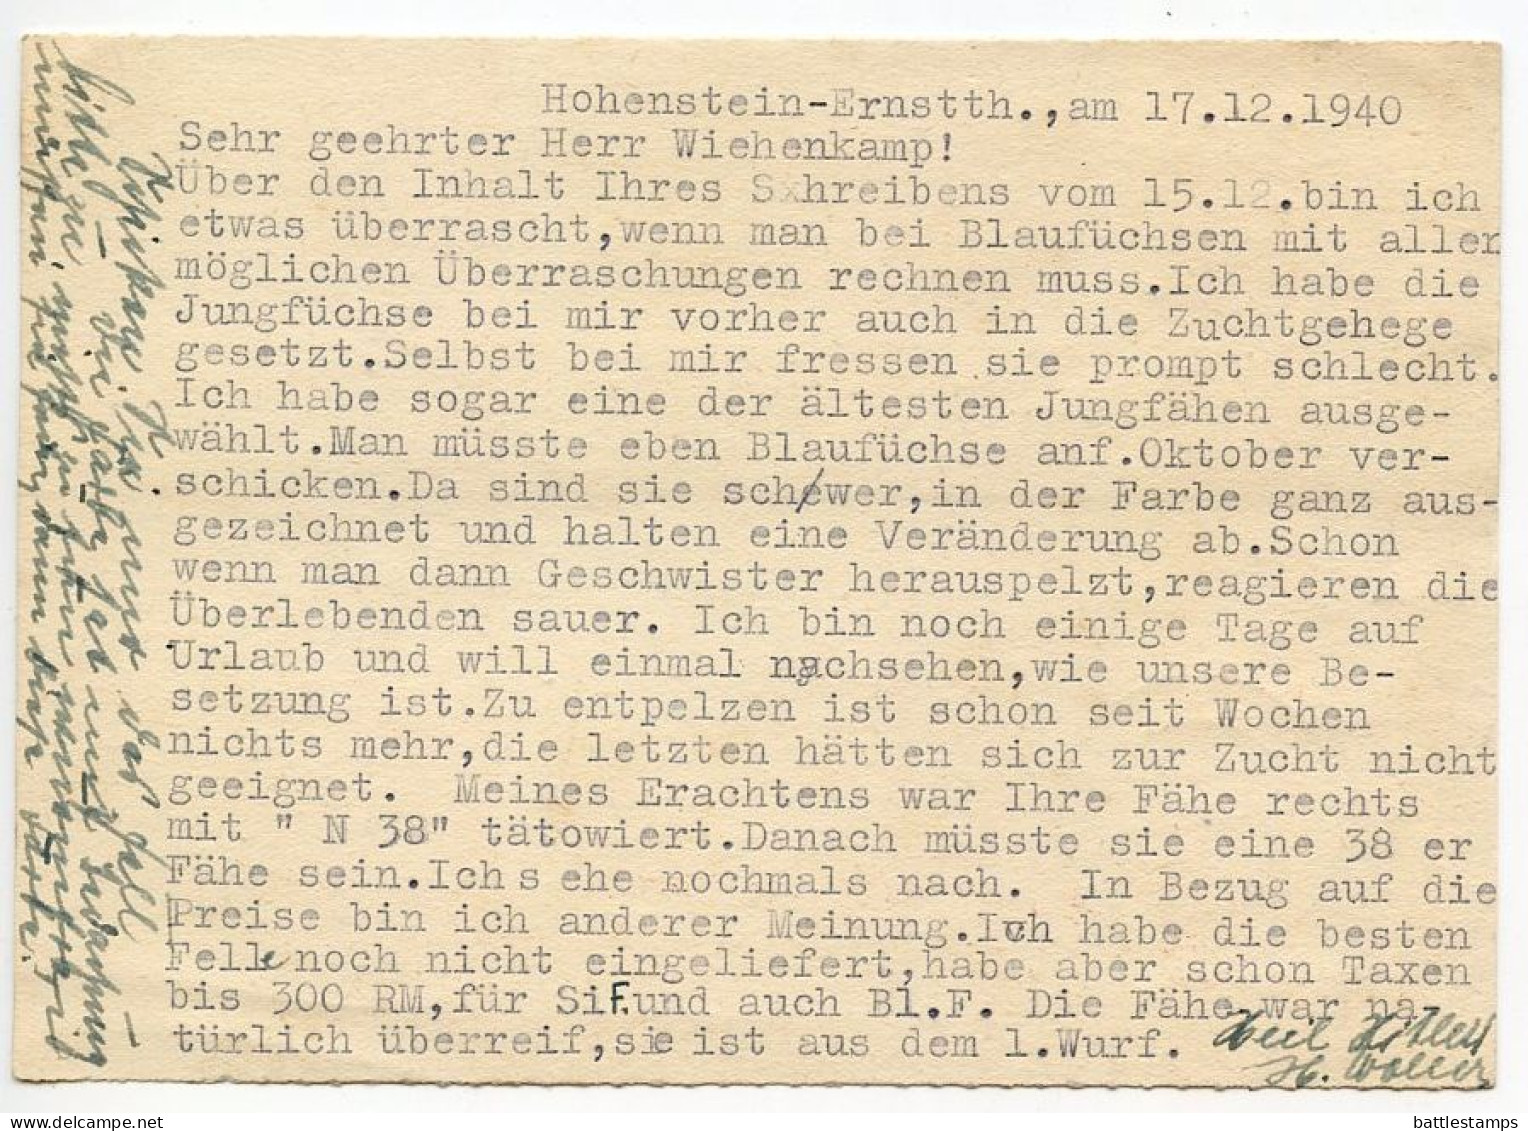 Germany 1940 Postcard; Hohenstein-Ernstthal - Erzgebirgische, Edelpelztierfarm To Schiplage; 6pf. Hindenburg - Brieven En Documenten